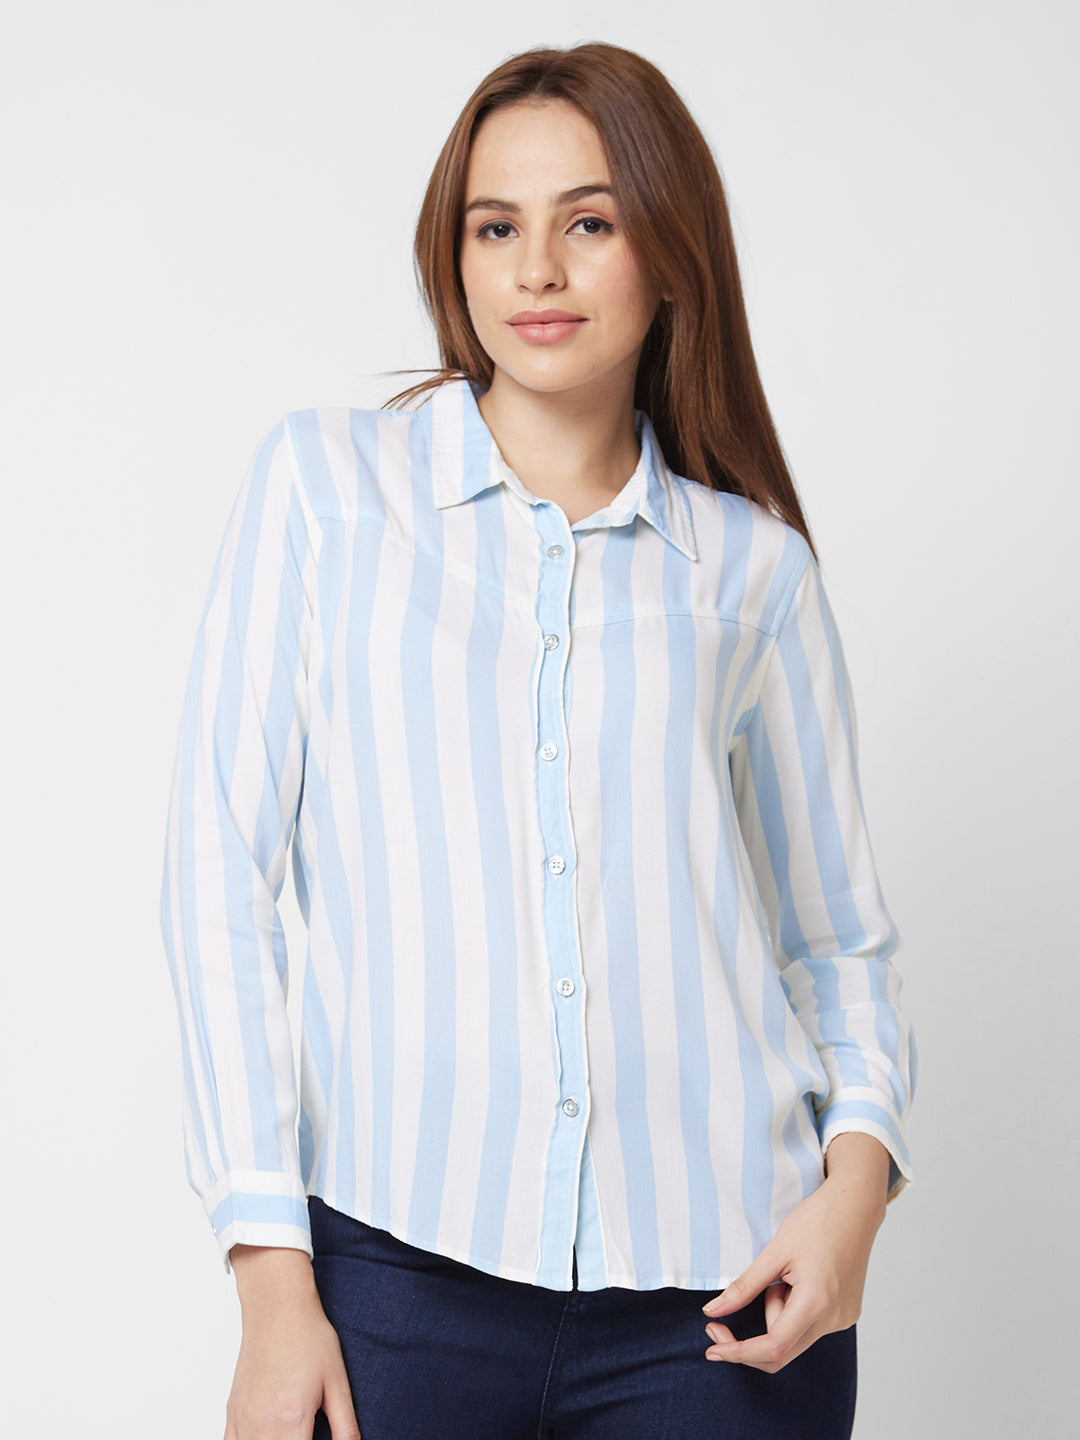 Spykar Full Sleeve Striped Blue Shirt For Women